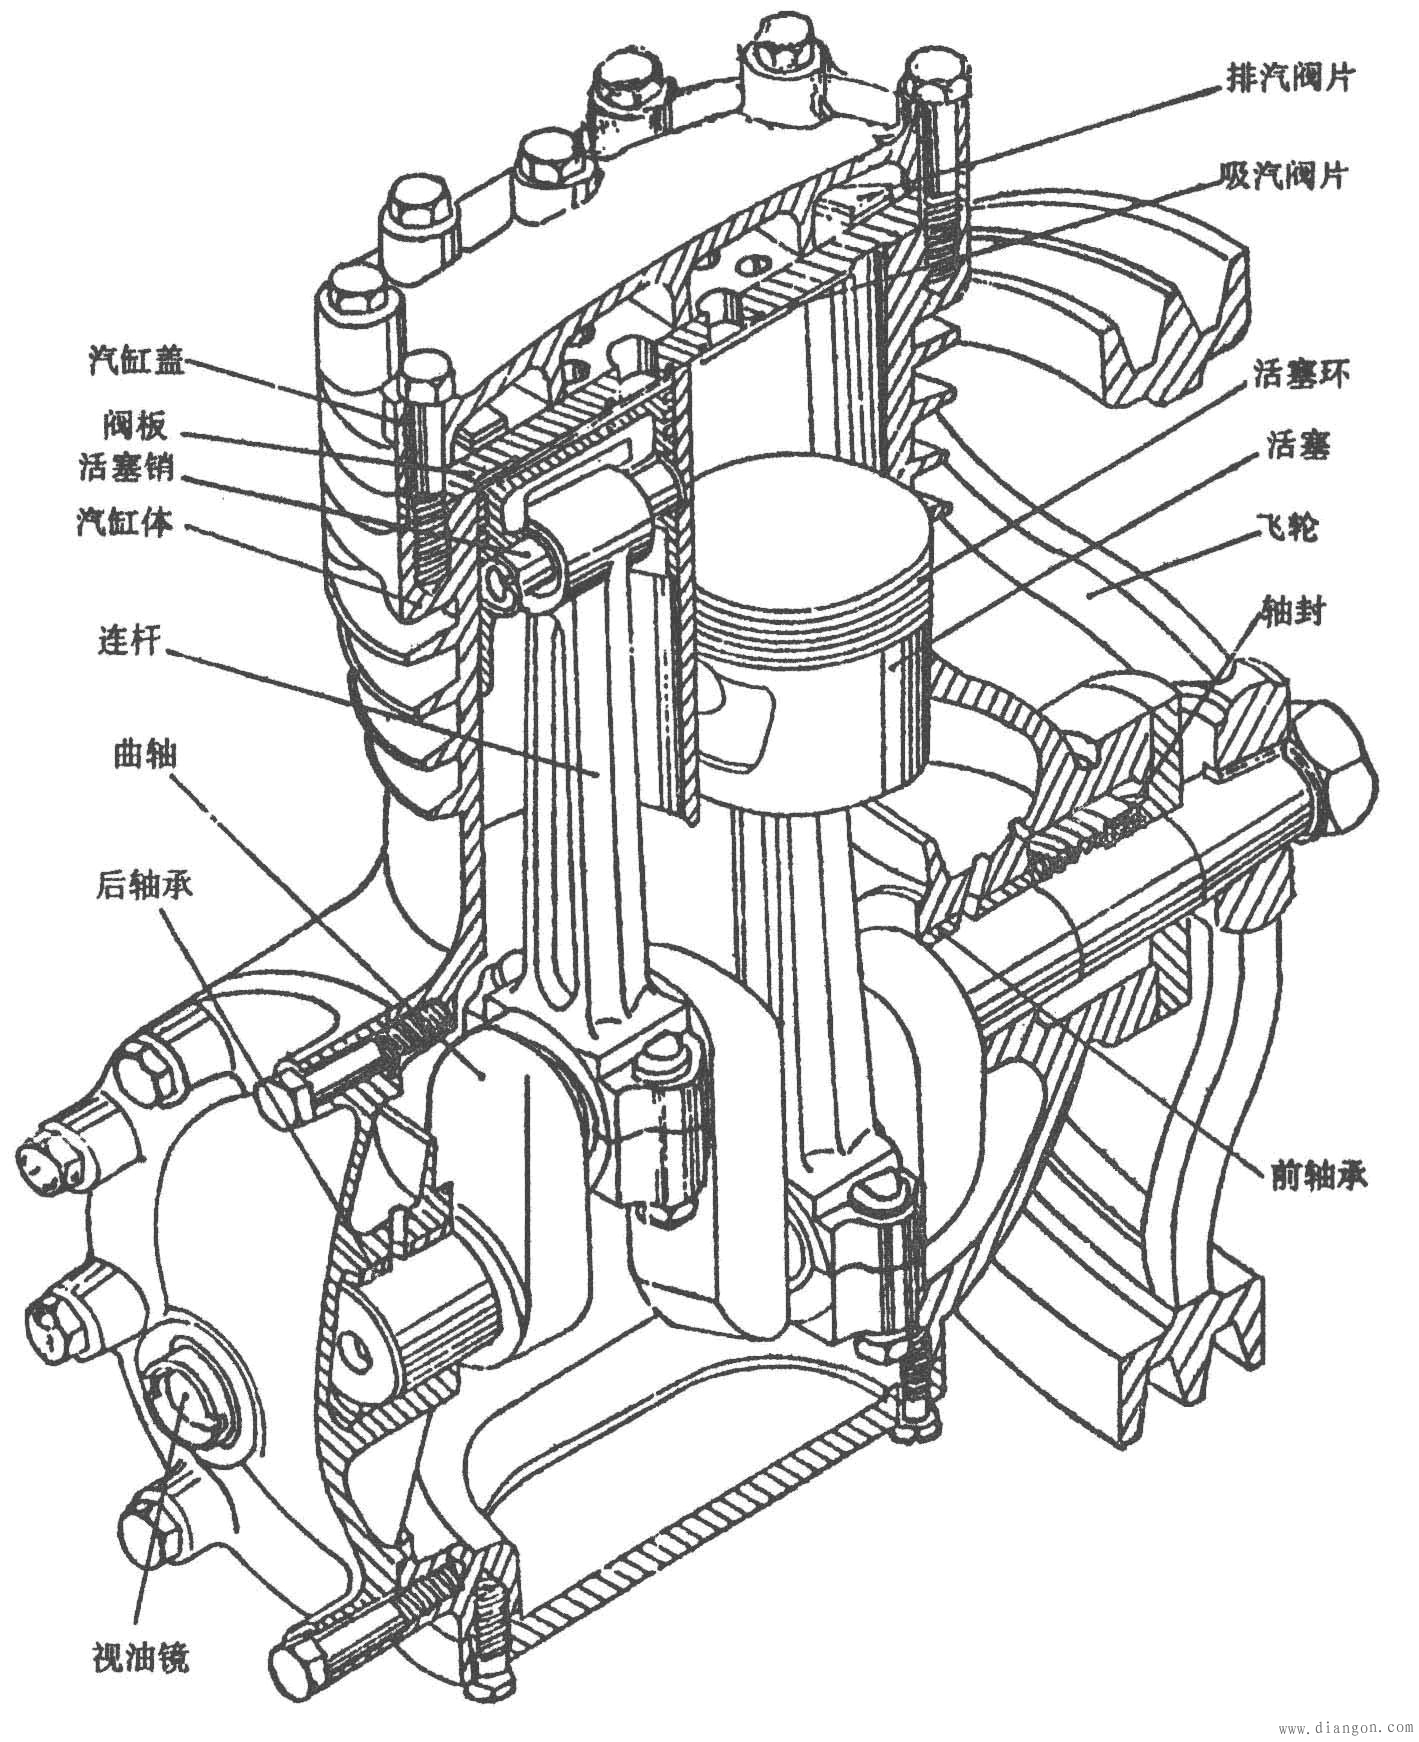 各种活塞式制冷压缩机的制冷量,外形,制冷剂,用途等不尽相同,但其